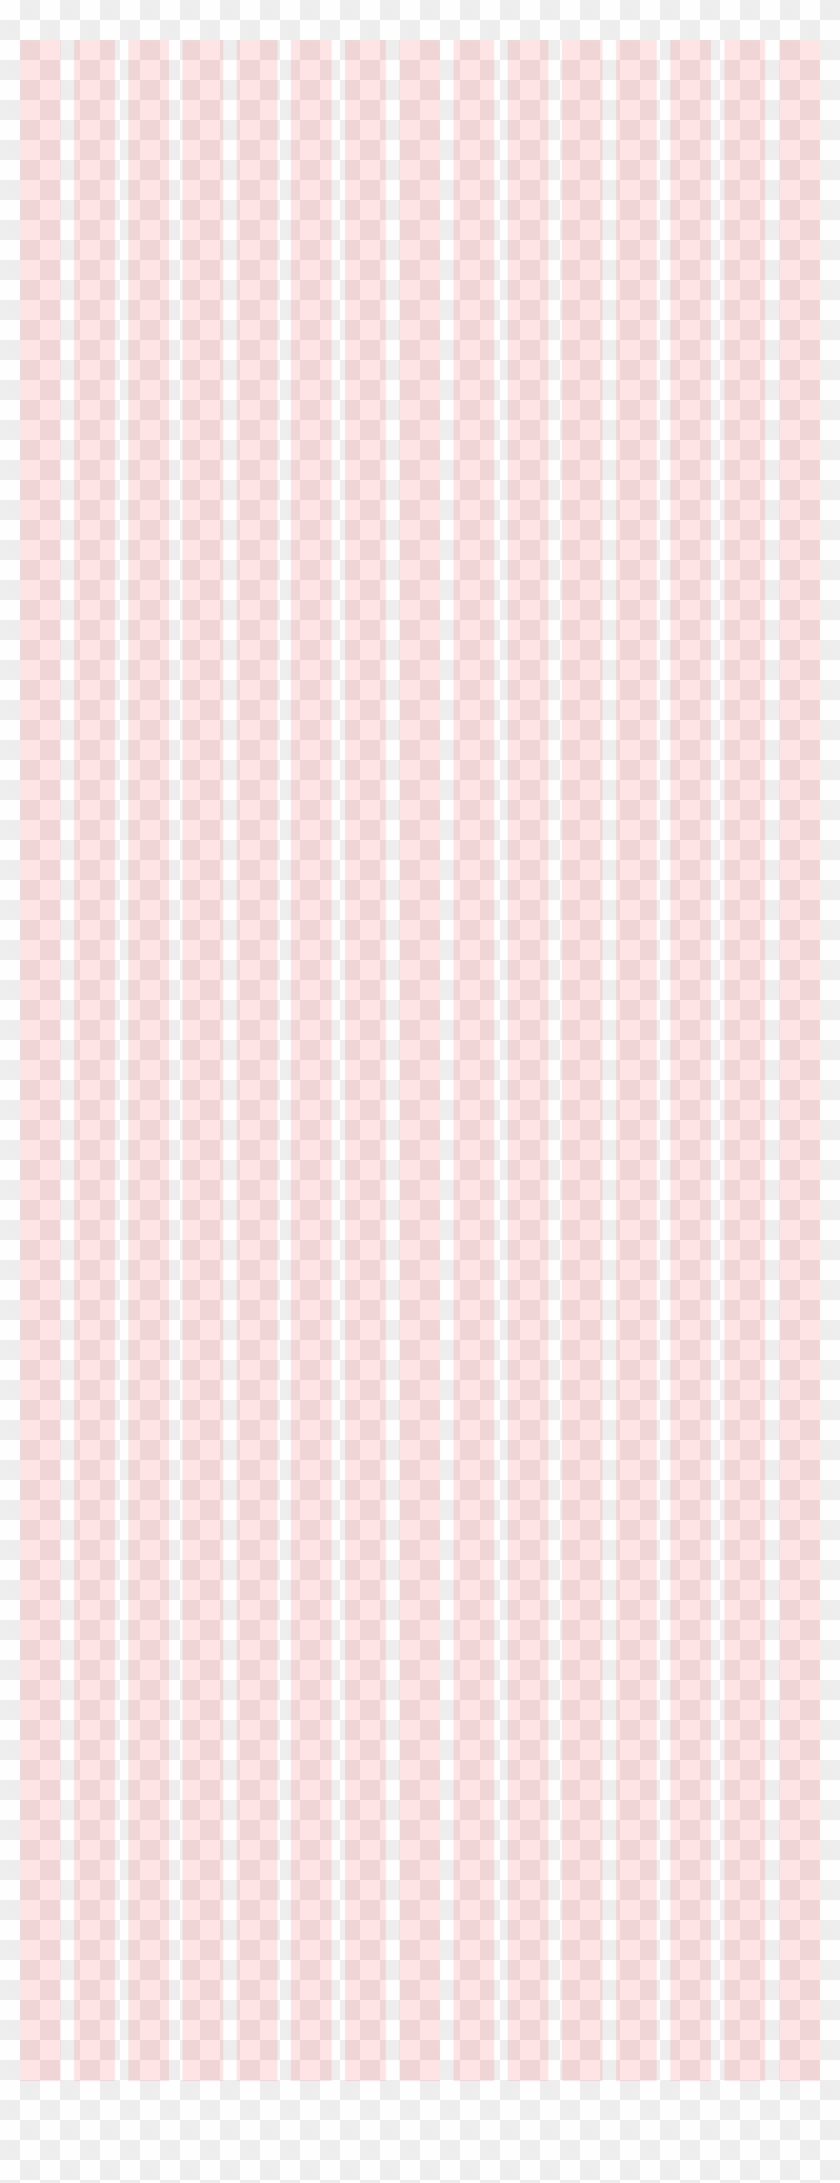 Grid - Peach Clipart #1282180